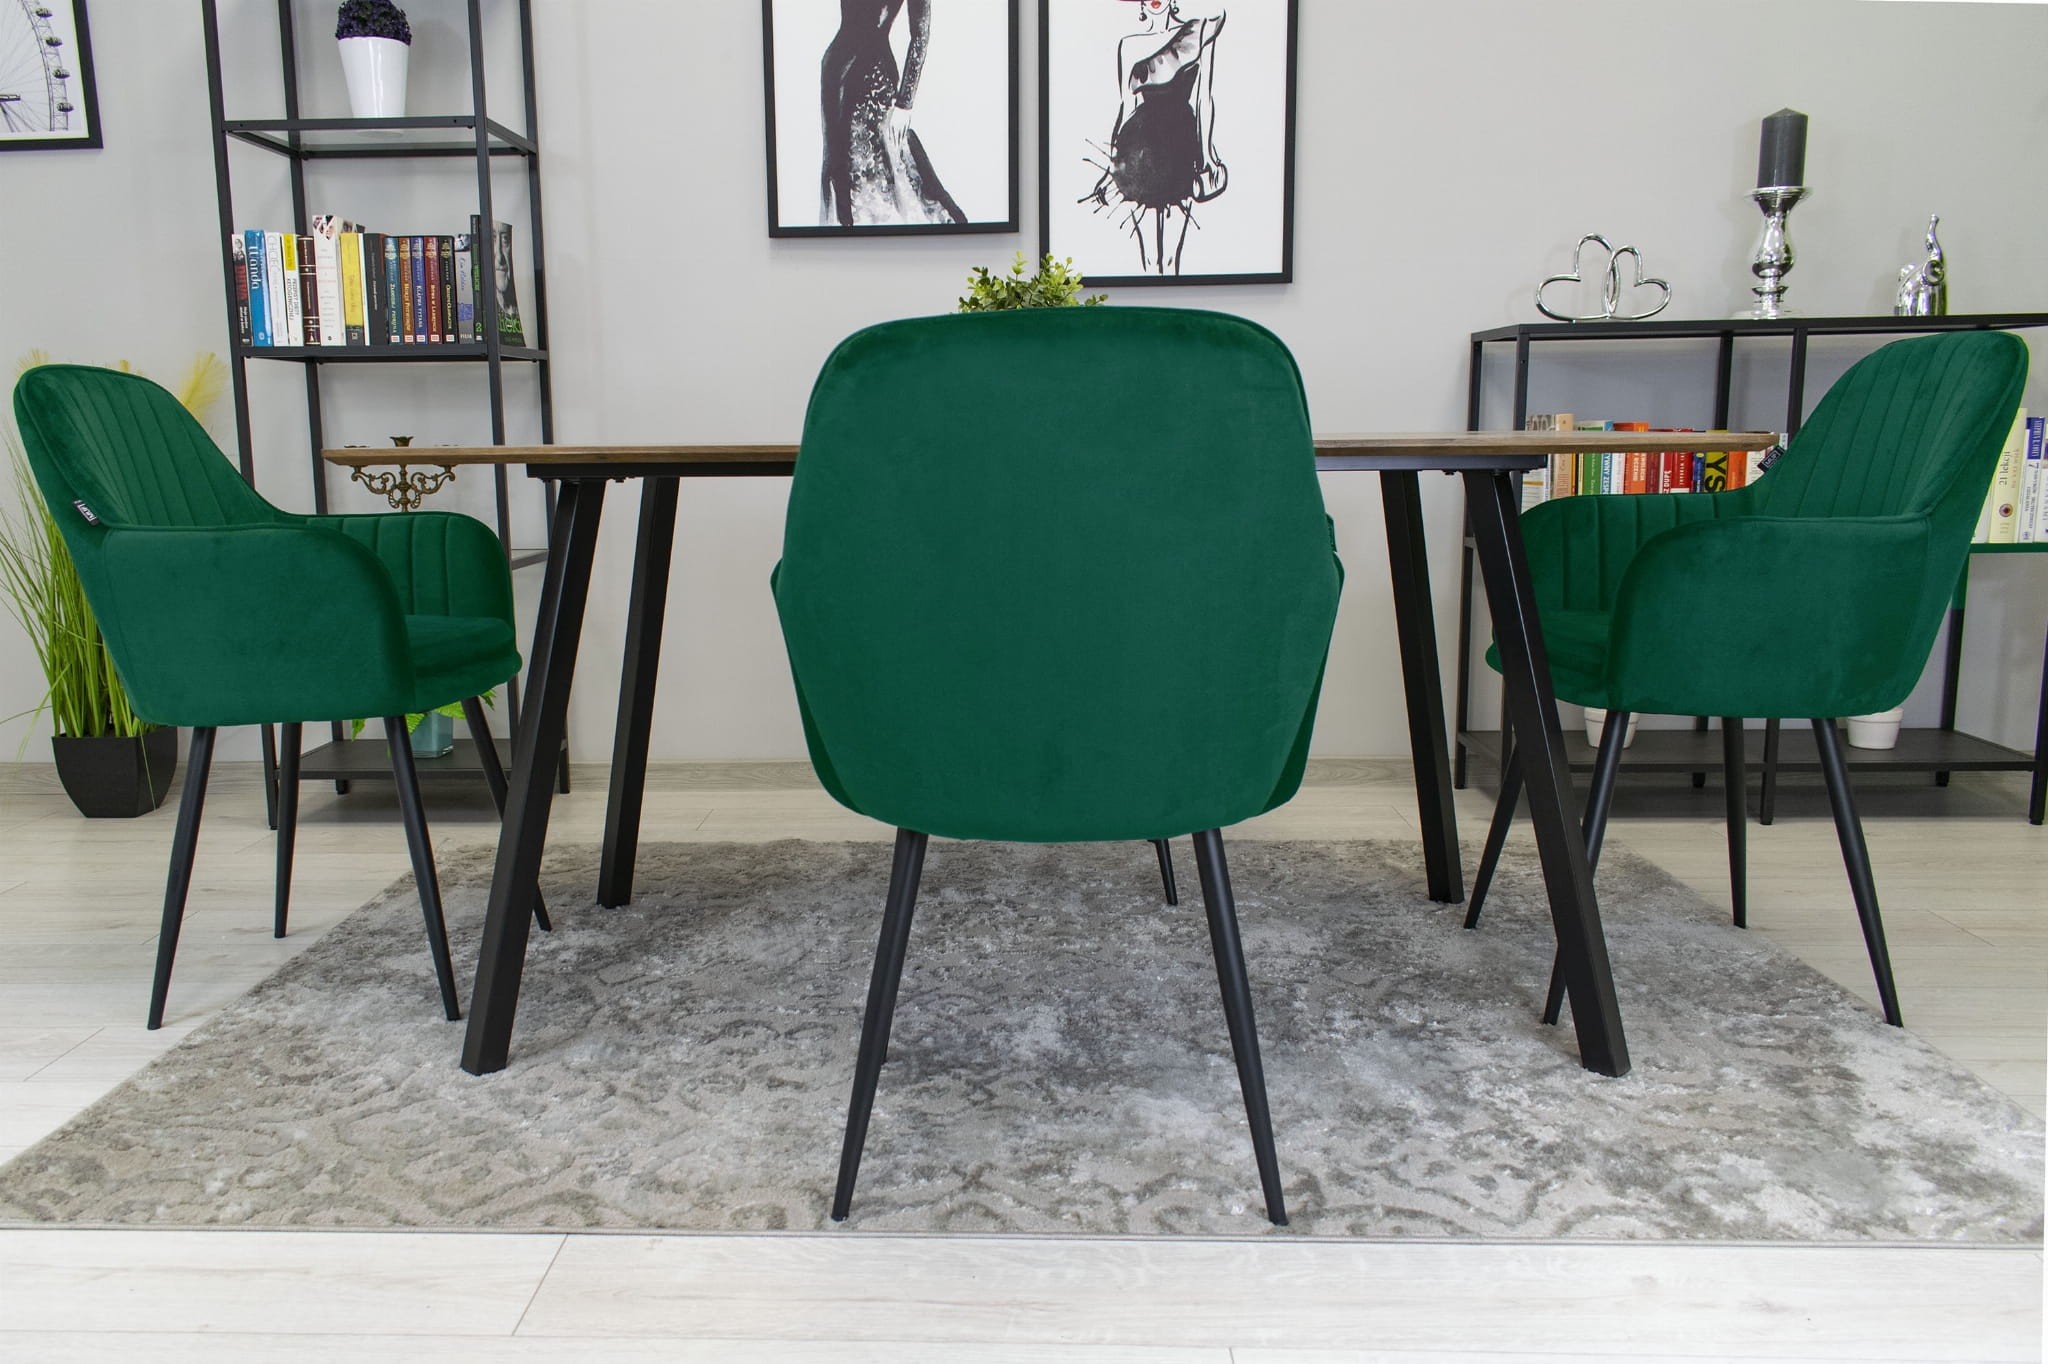 Jedálenská stolička LUGO zelená (čierne nohy)